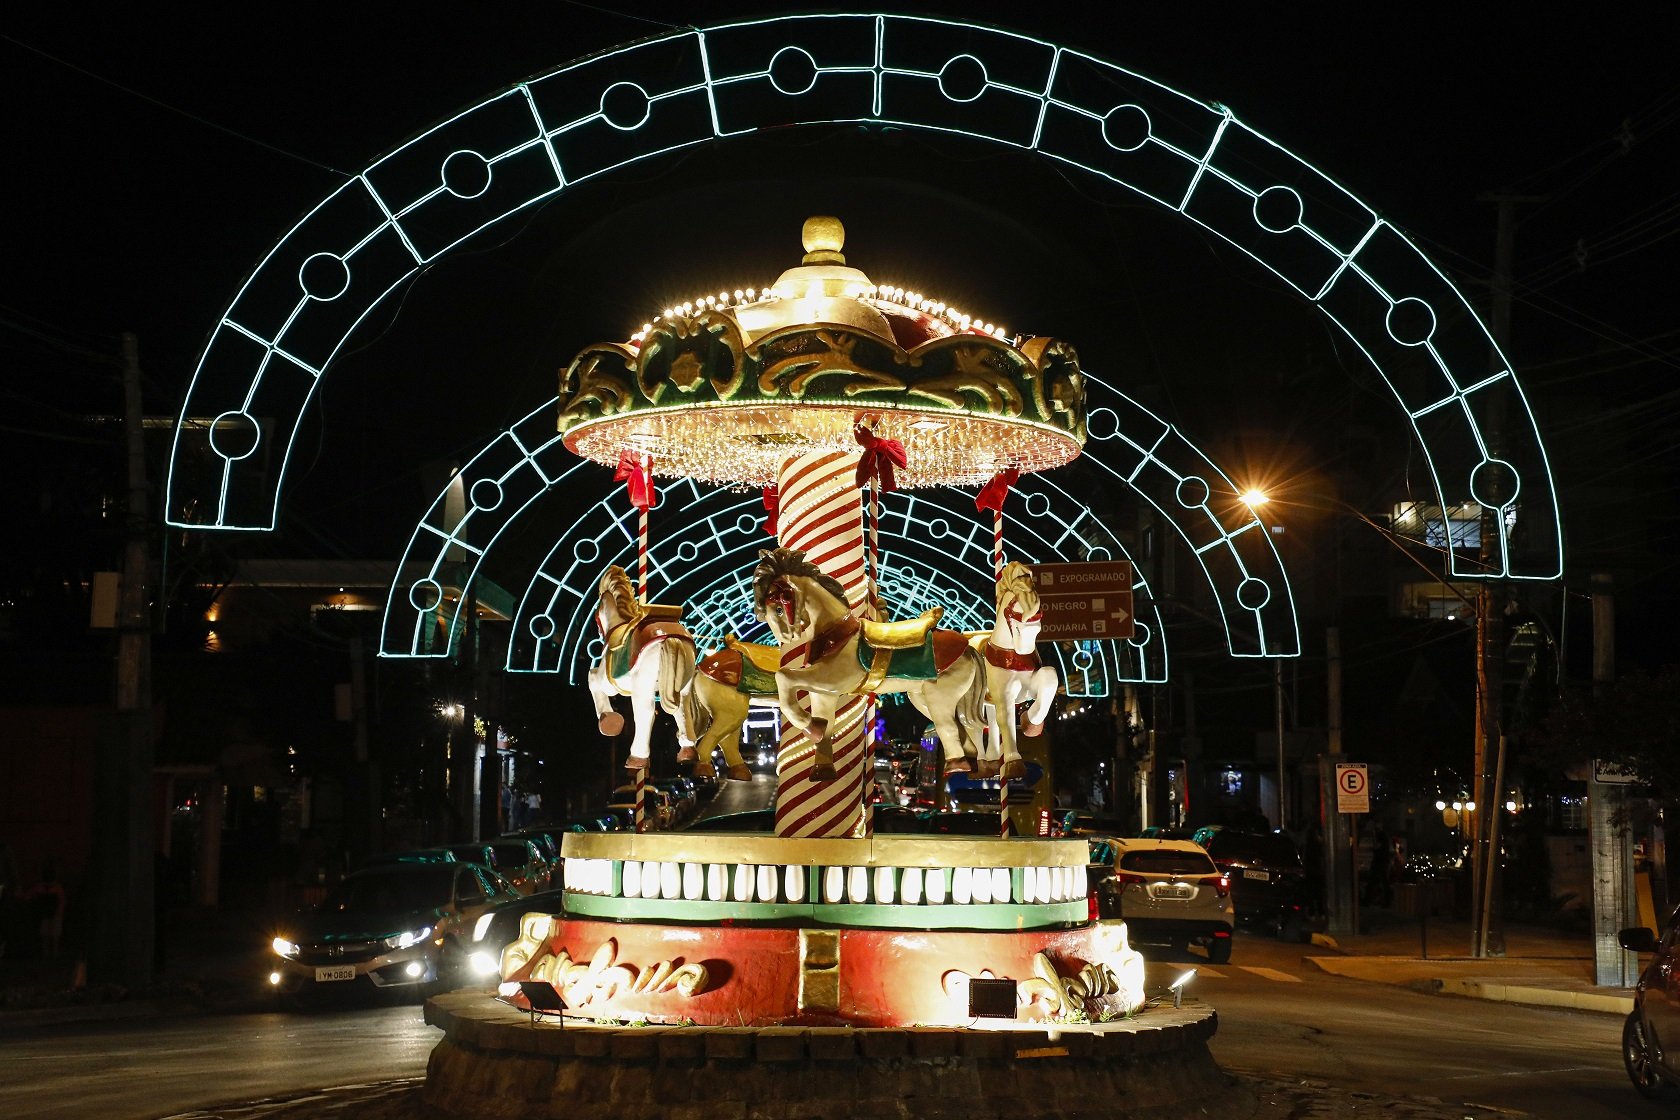 Imagem do carrossel decorativo no Natal Luz de Gramado.